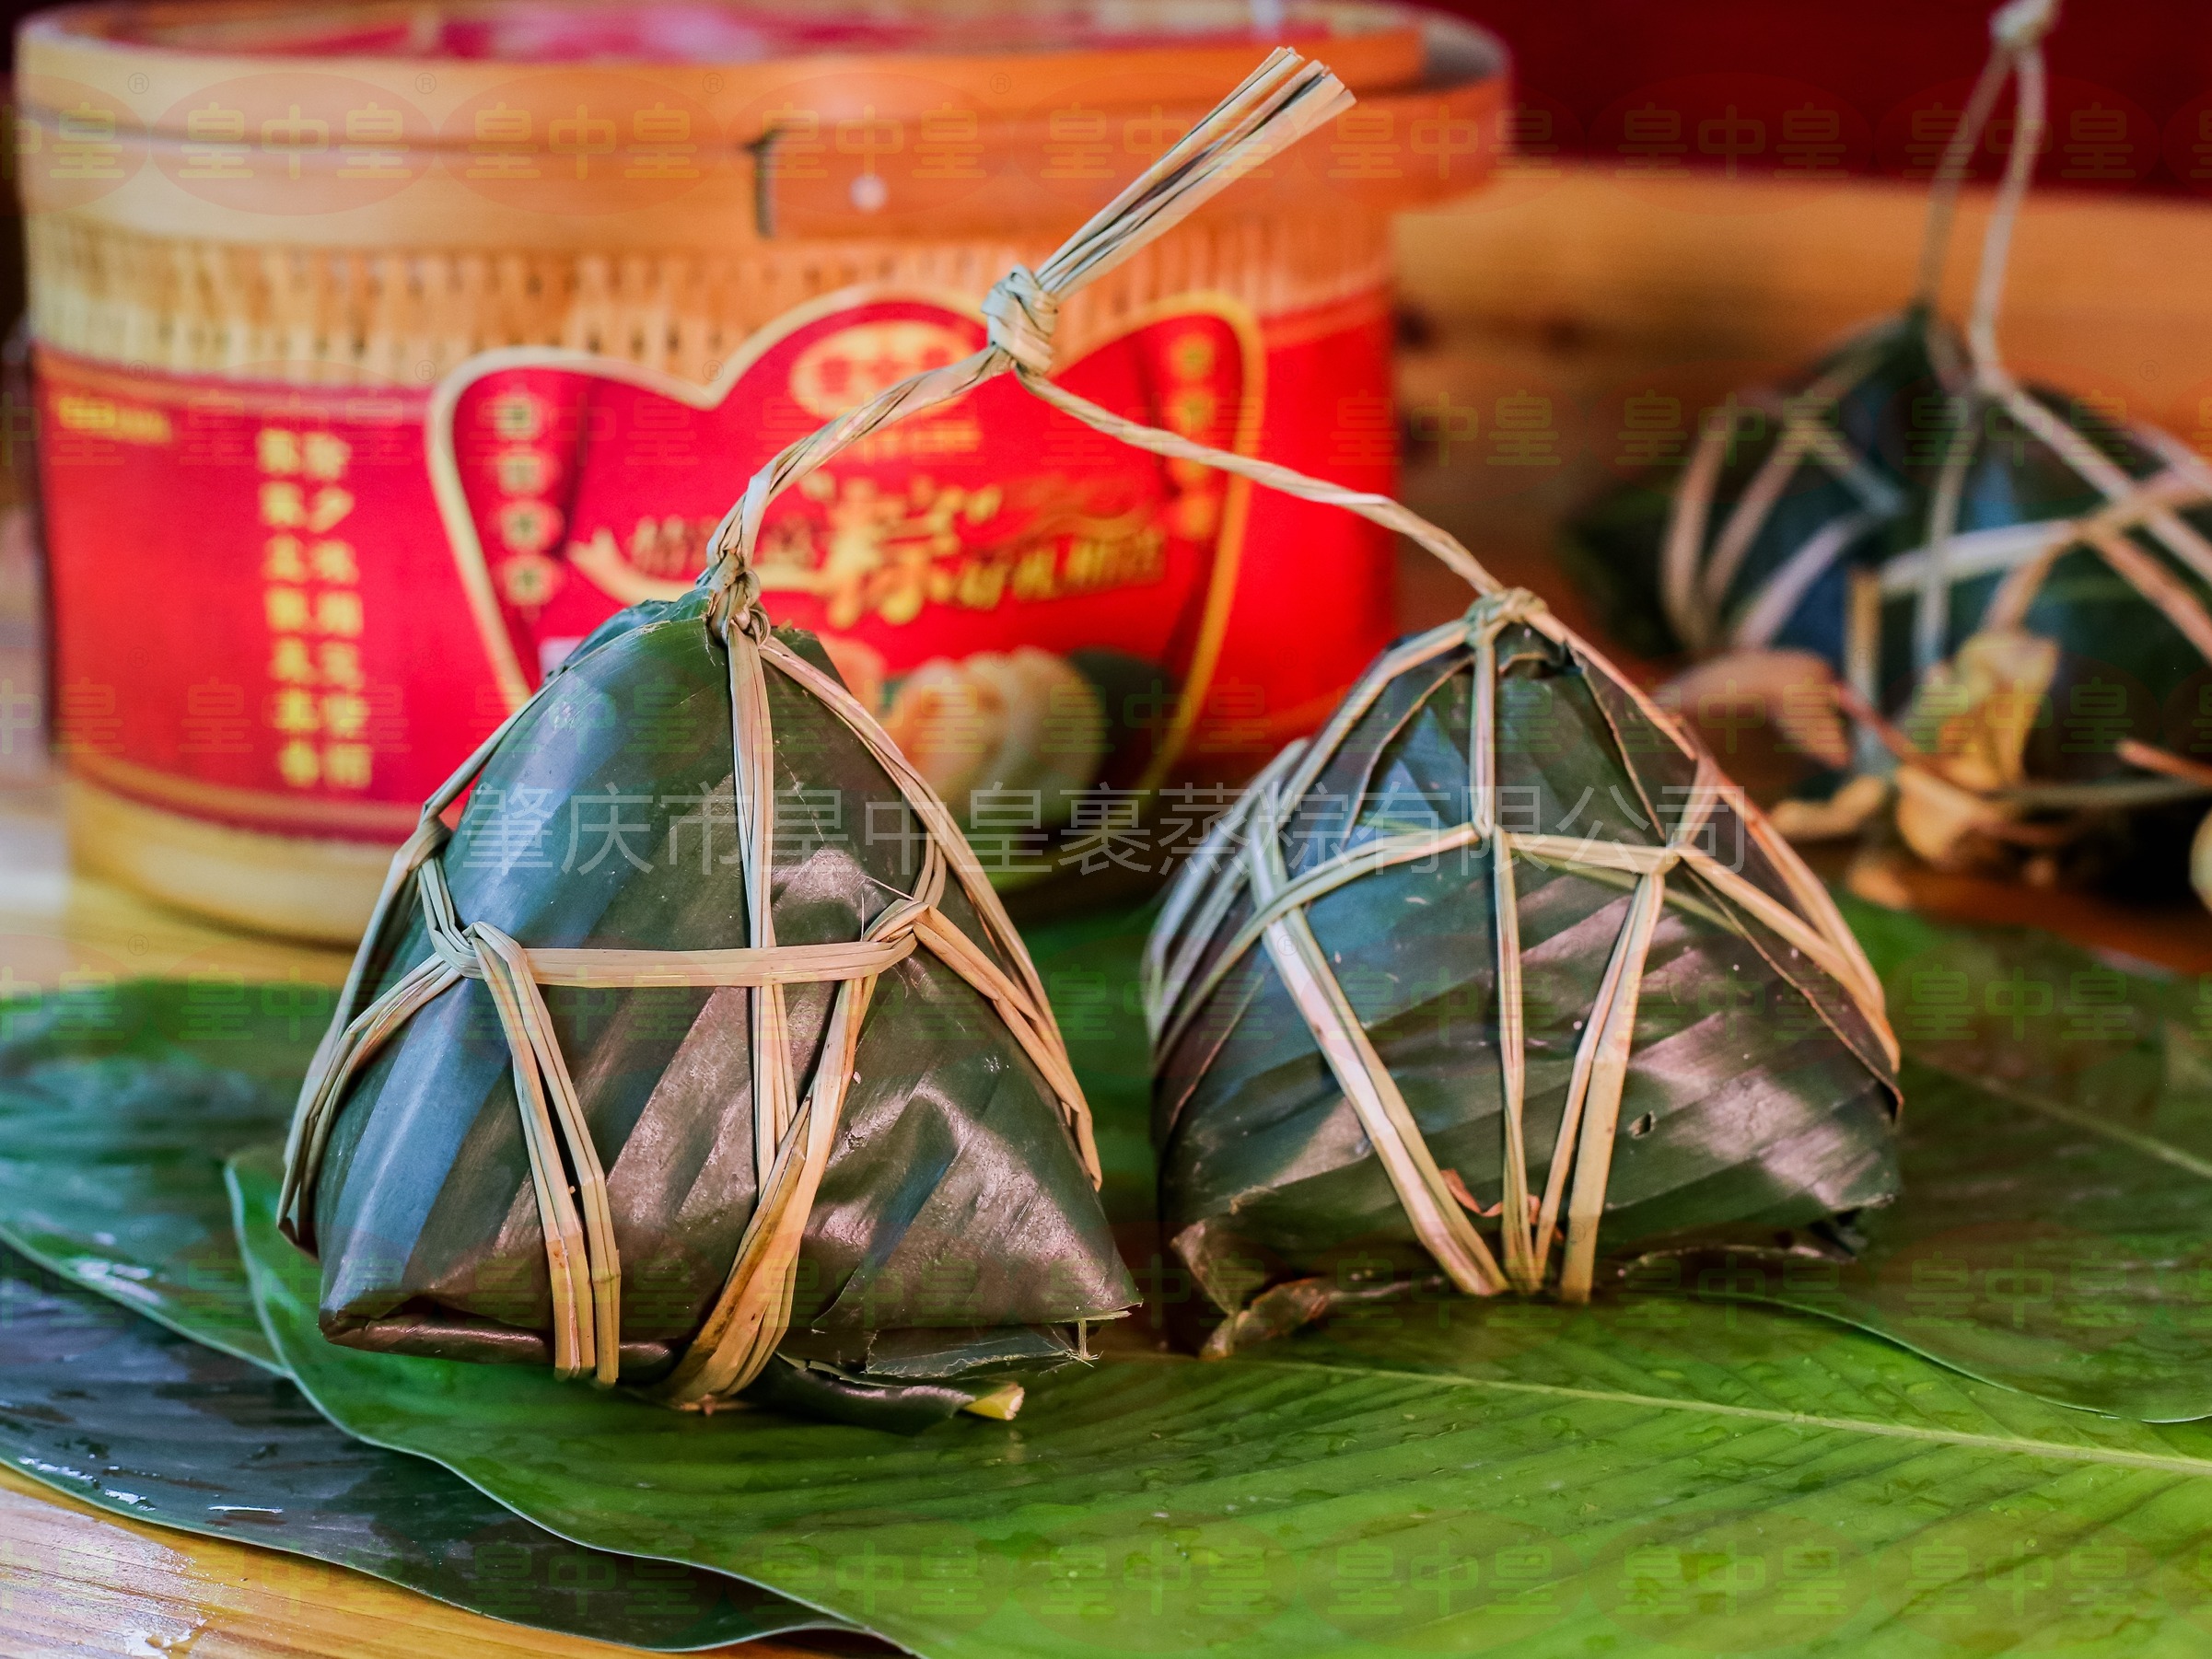 传统文化熏陶下的经典美食——肇庆裹蒸粽